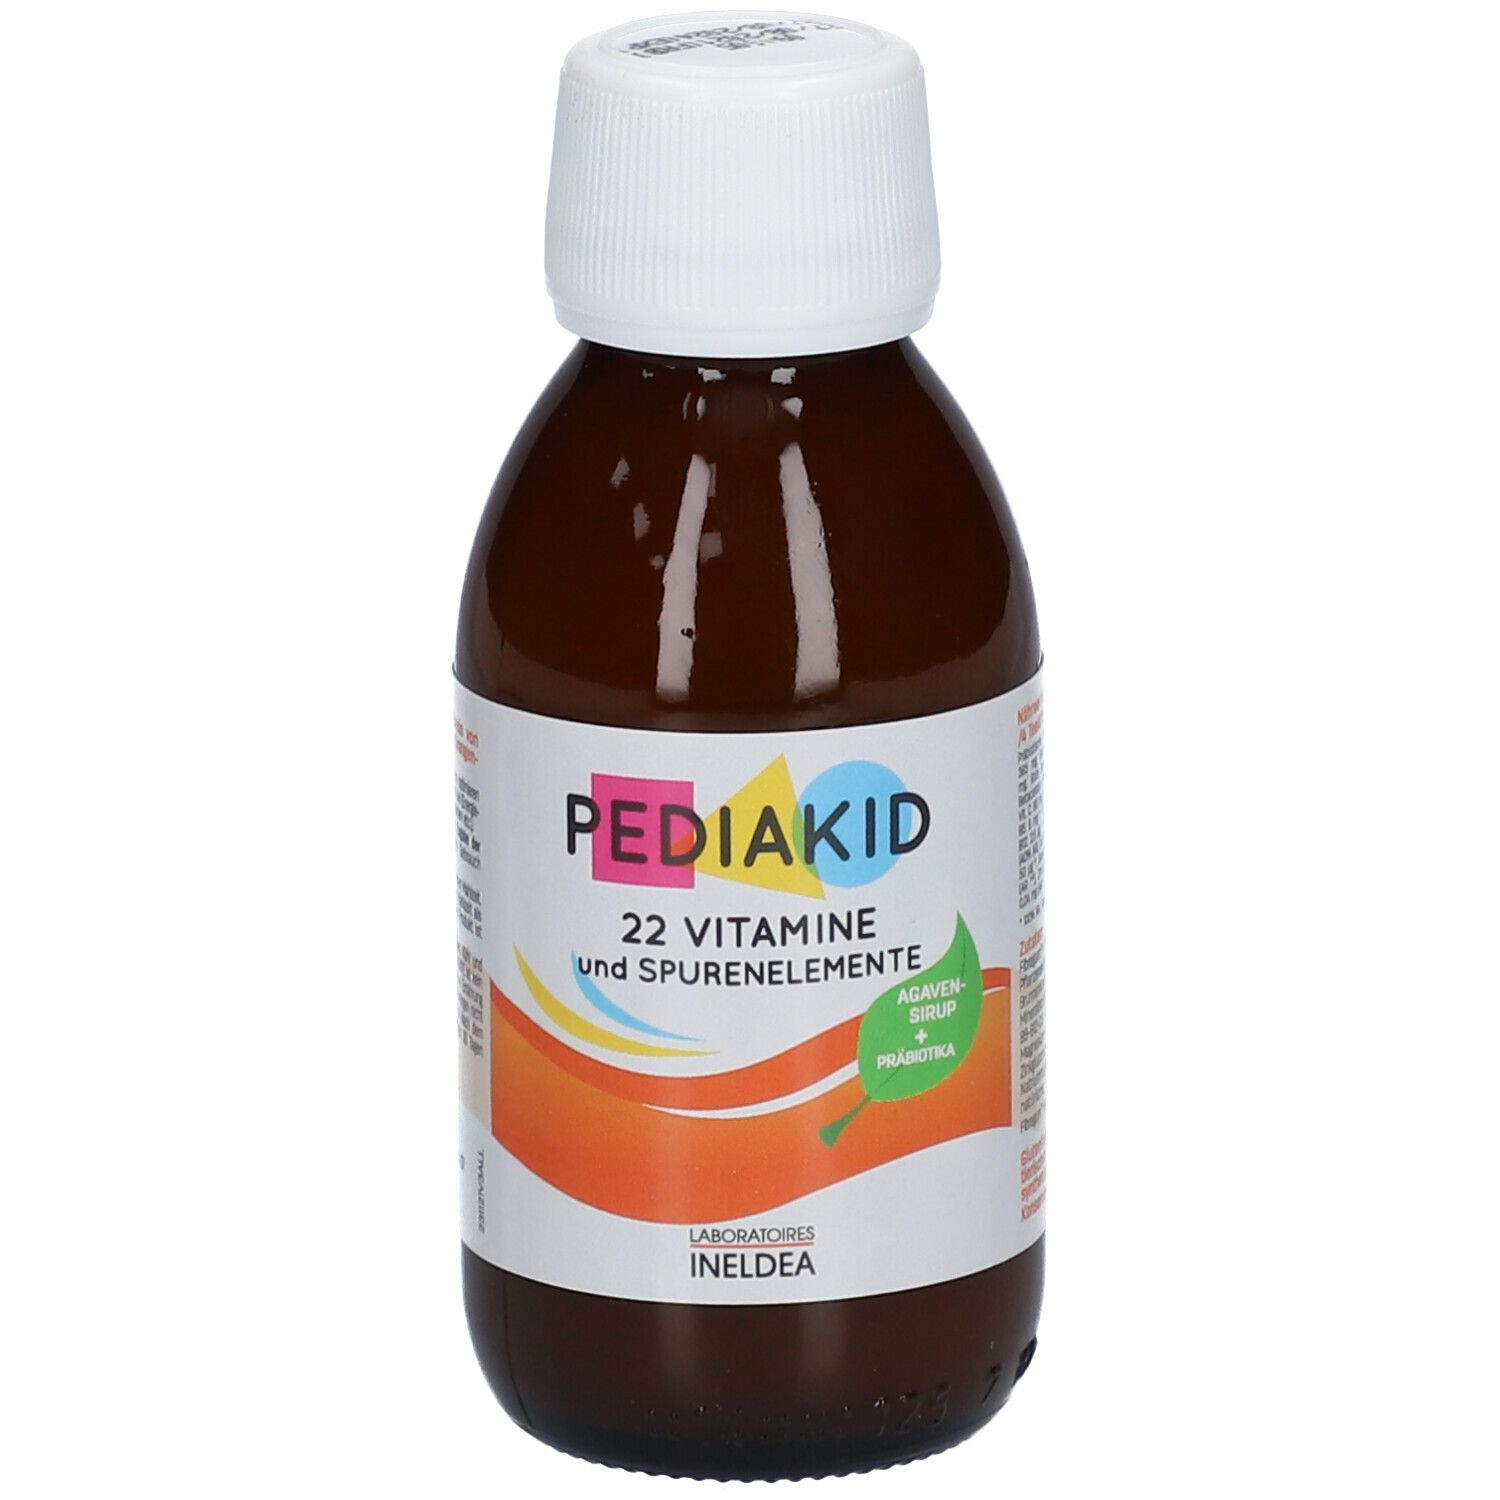  PEDIAKID® 22 Vitamine und Spurenelemente